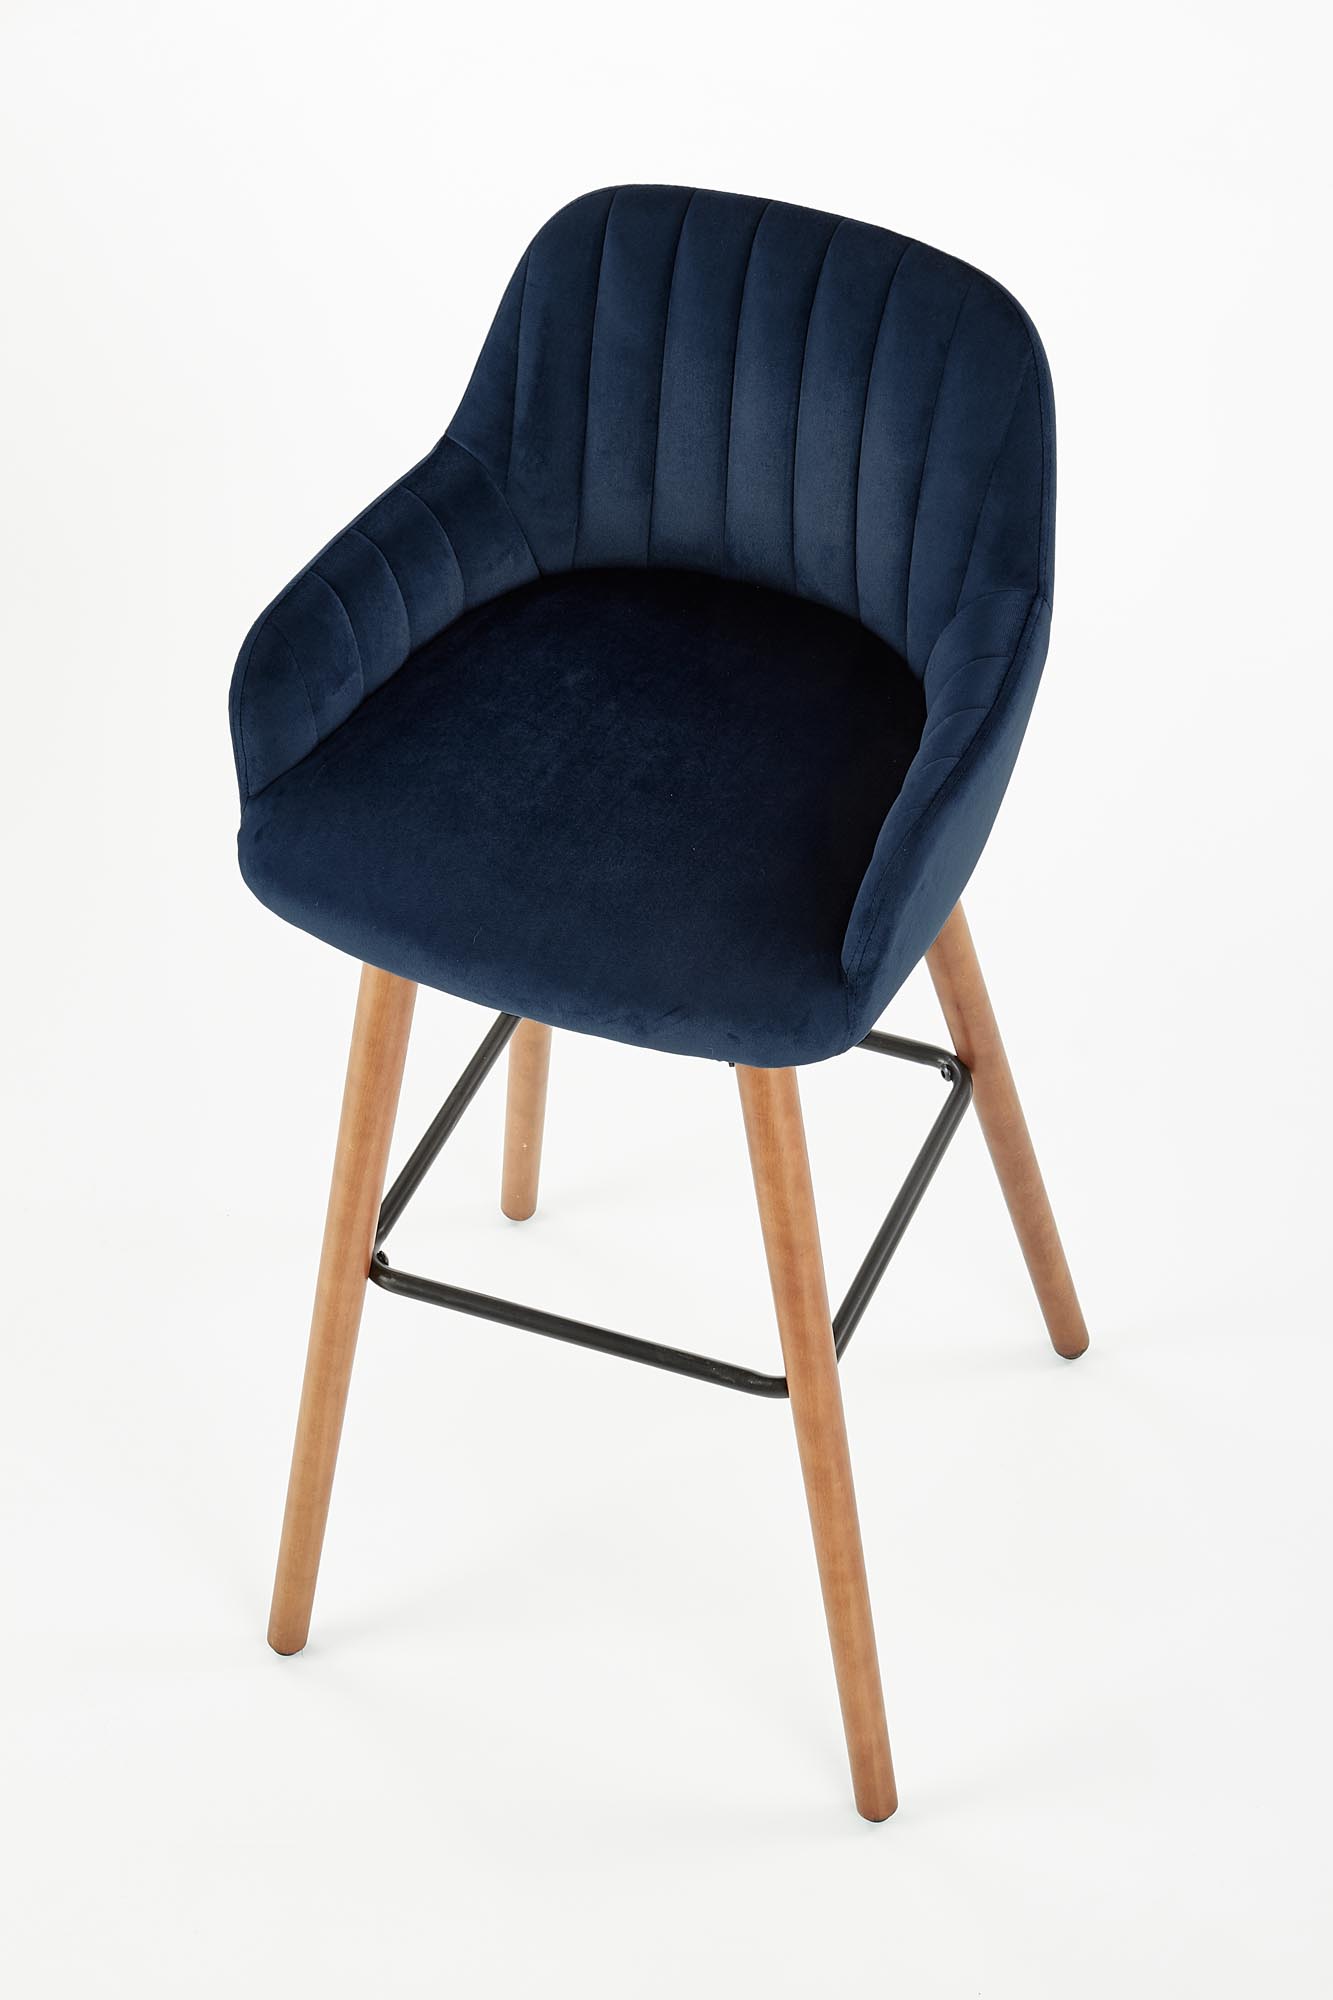 H93 Barová židle Nohy - Ořech, Čalounění - tmavě modré h93 Barová židle Nohy - Ořech, Čalounění - tmavě modré